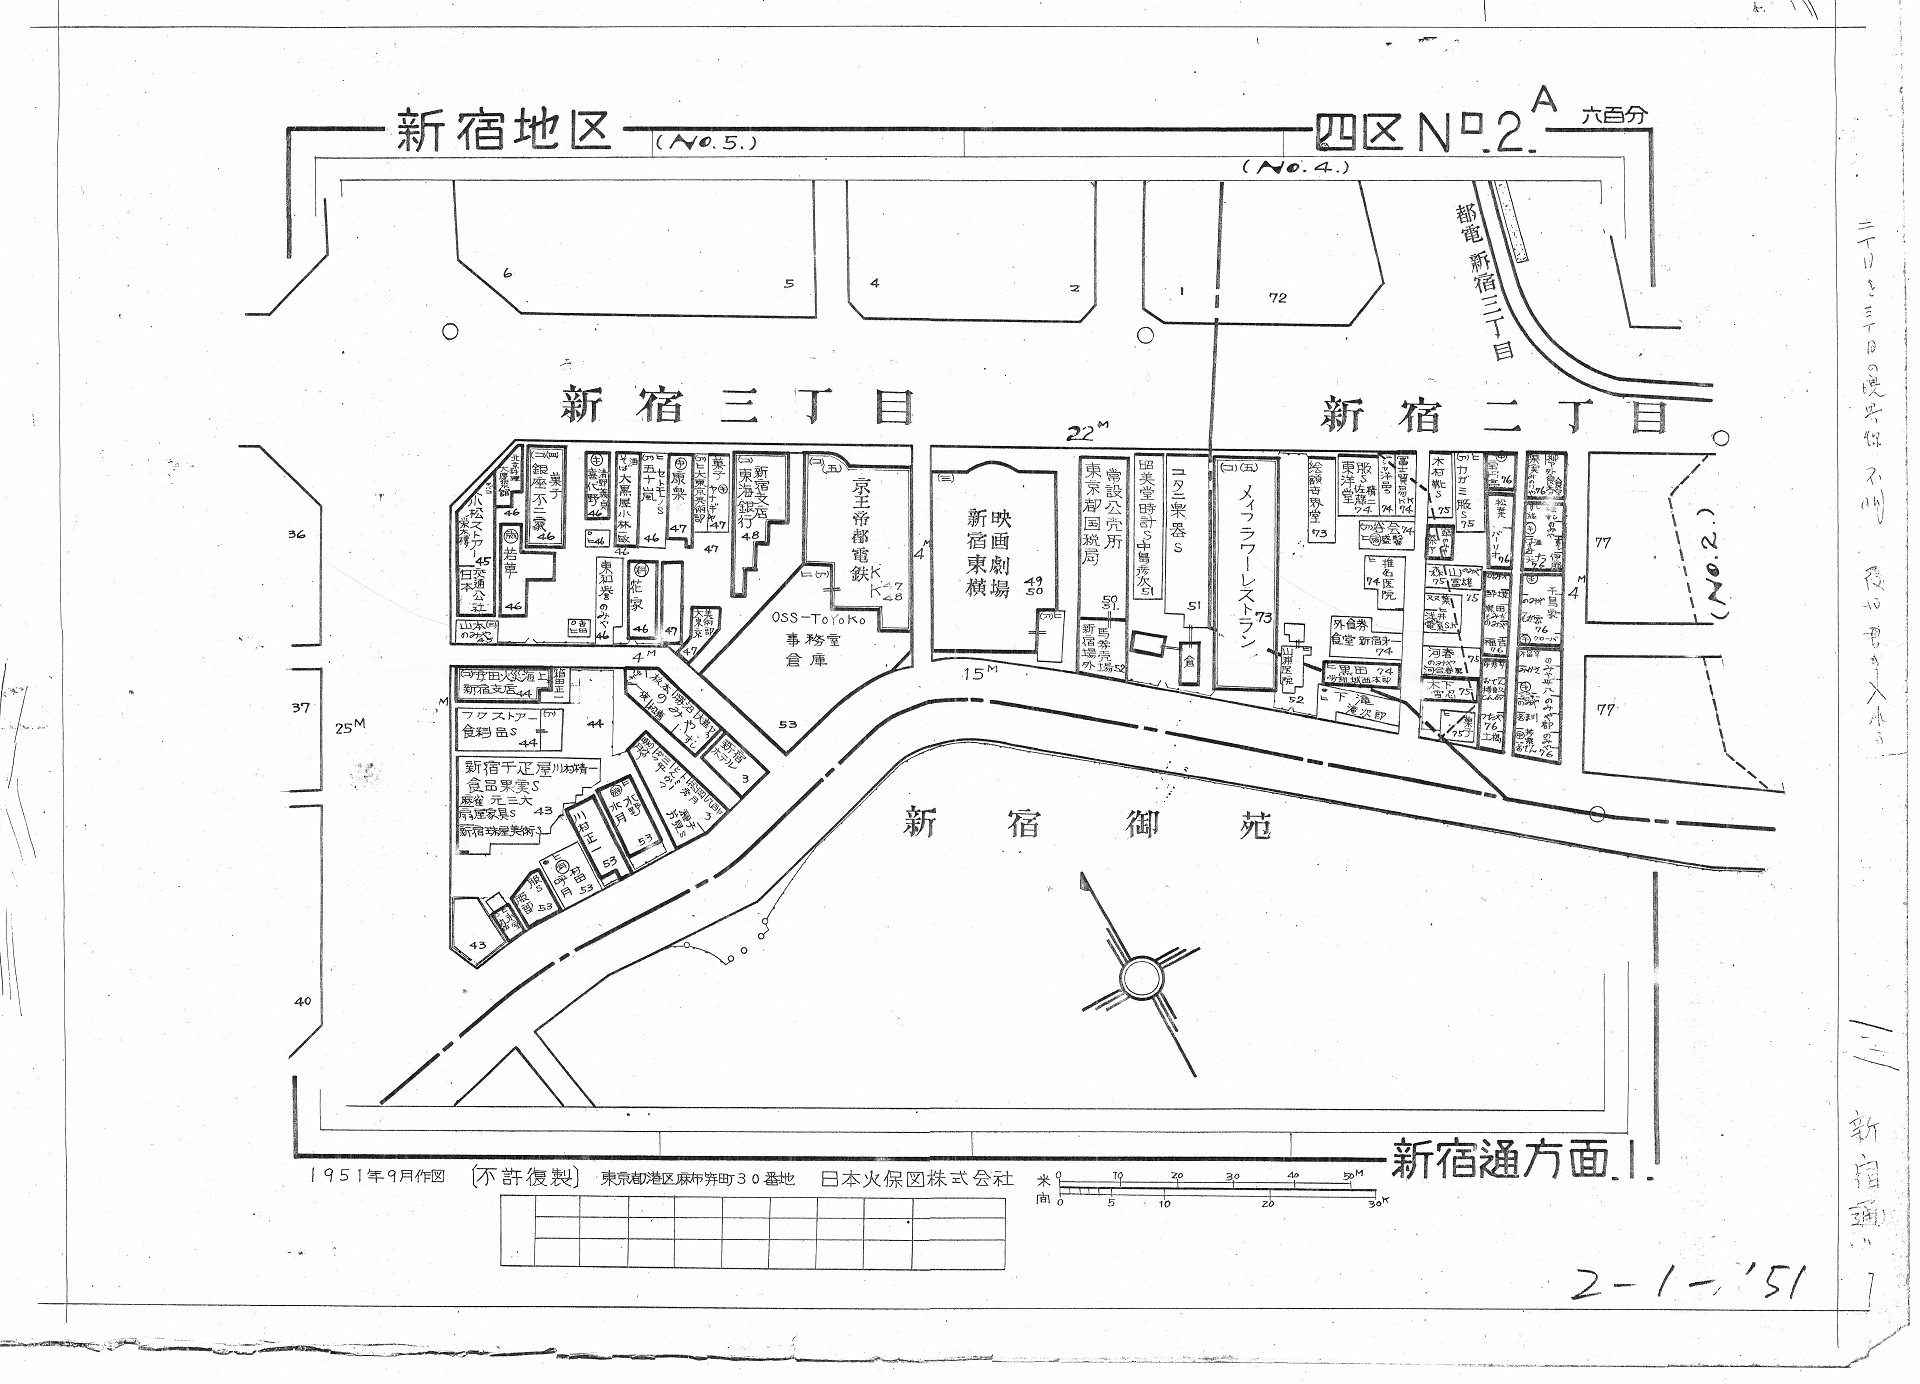 資料13『新宿区 [4] 新宿通方面 1　１９５１年』東京都立中央図書館所蔵の画像